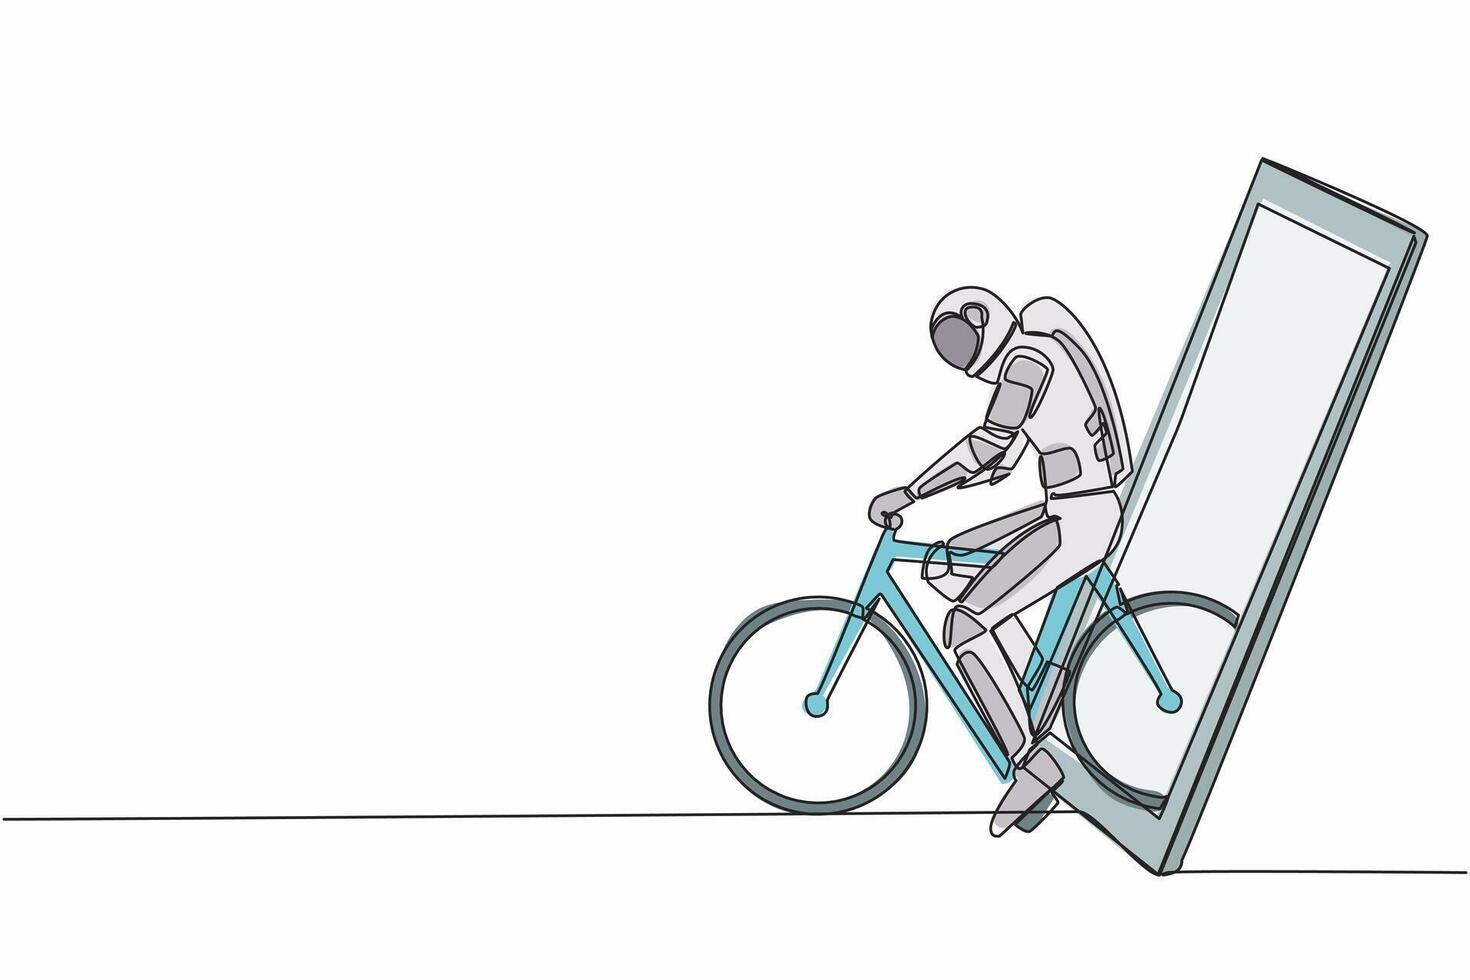 Single kontinuierlich Linie Zeichnung jung Astronaut Fahrrad Rennfahrer verbessern seine Geschwindigkeit beim Ausbildung Session bekommen aus von Smartphone Bildschirm. Kosmonaut tief Raum. einer Linie Grafik Design Vektor Illustration